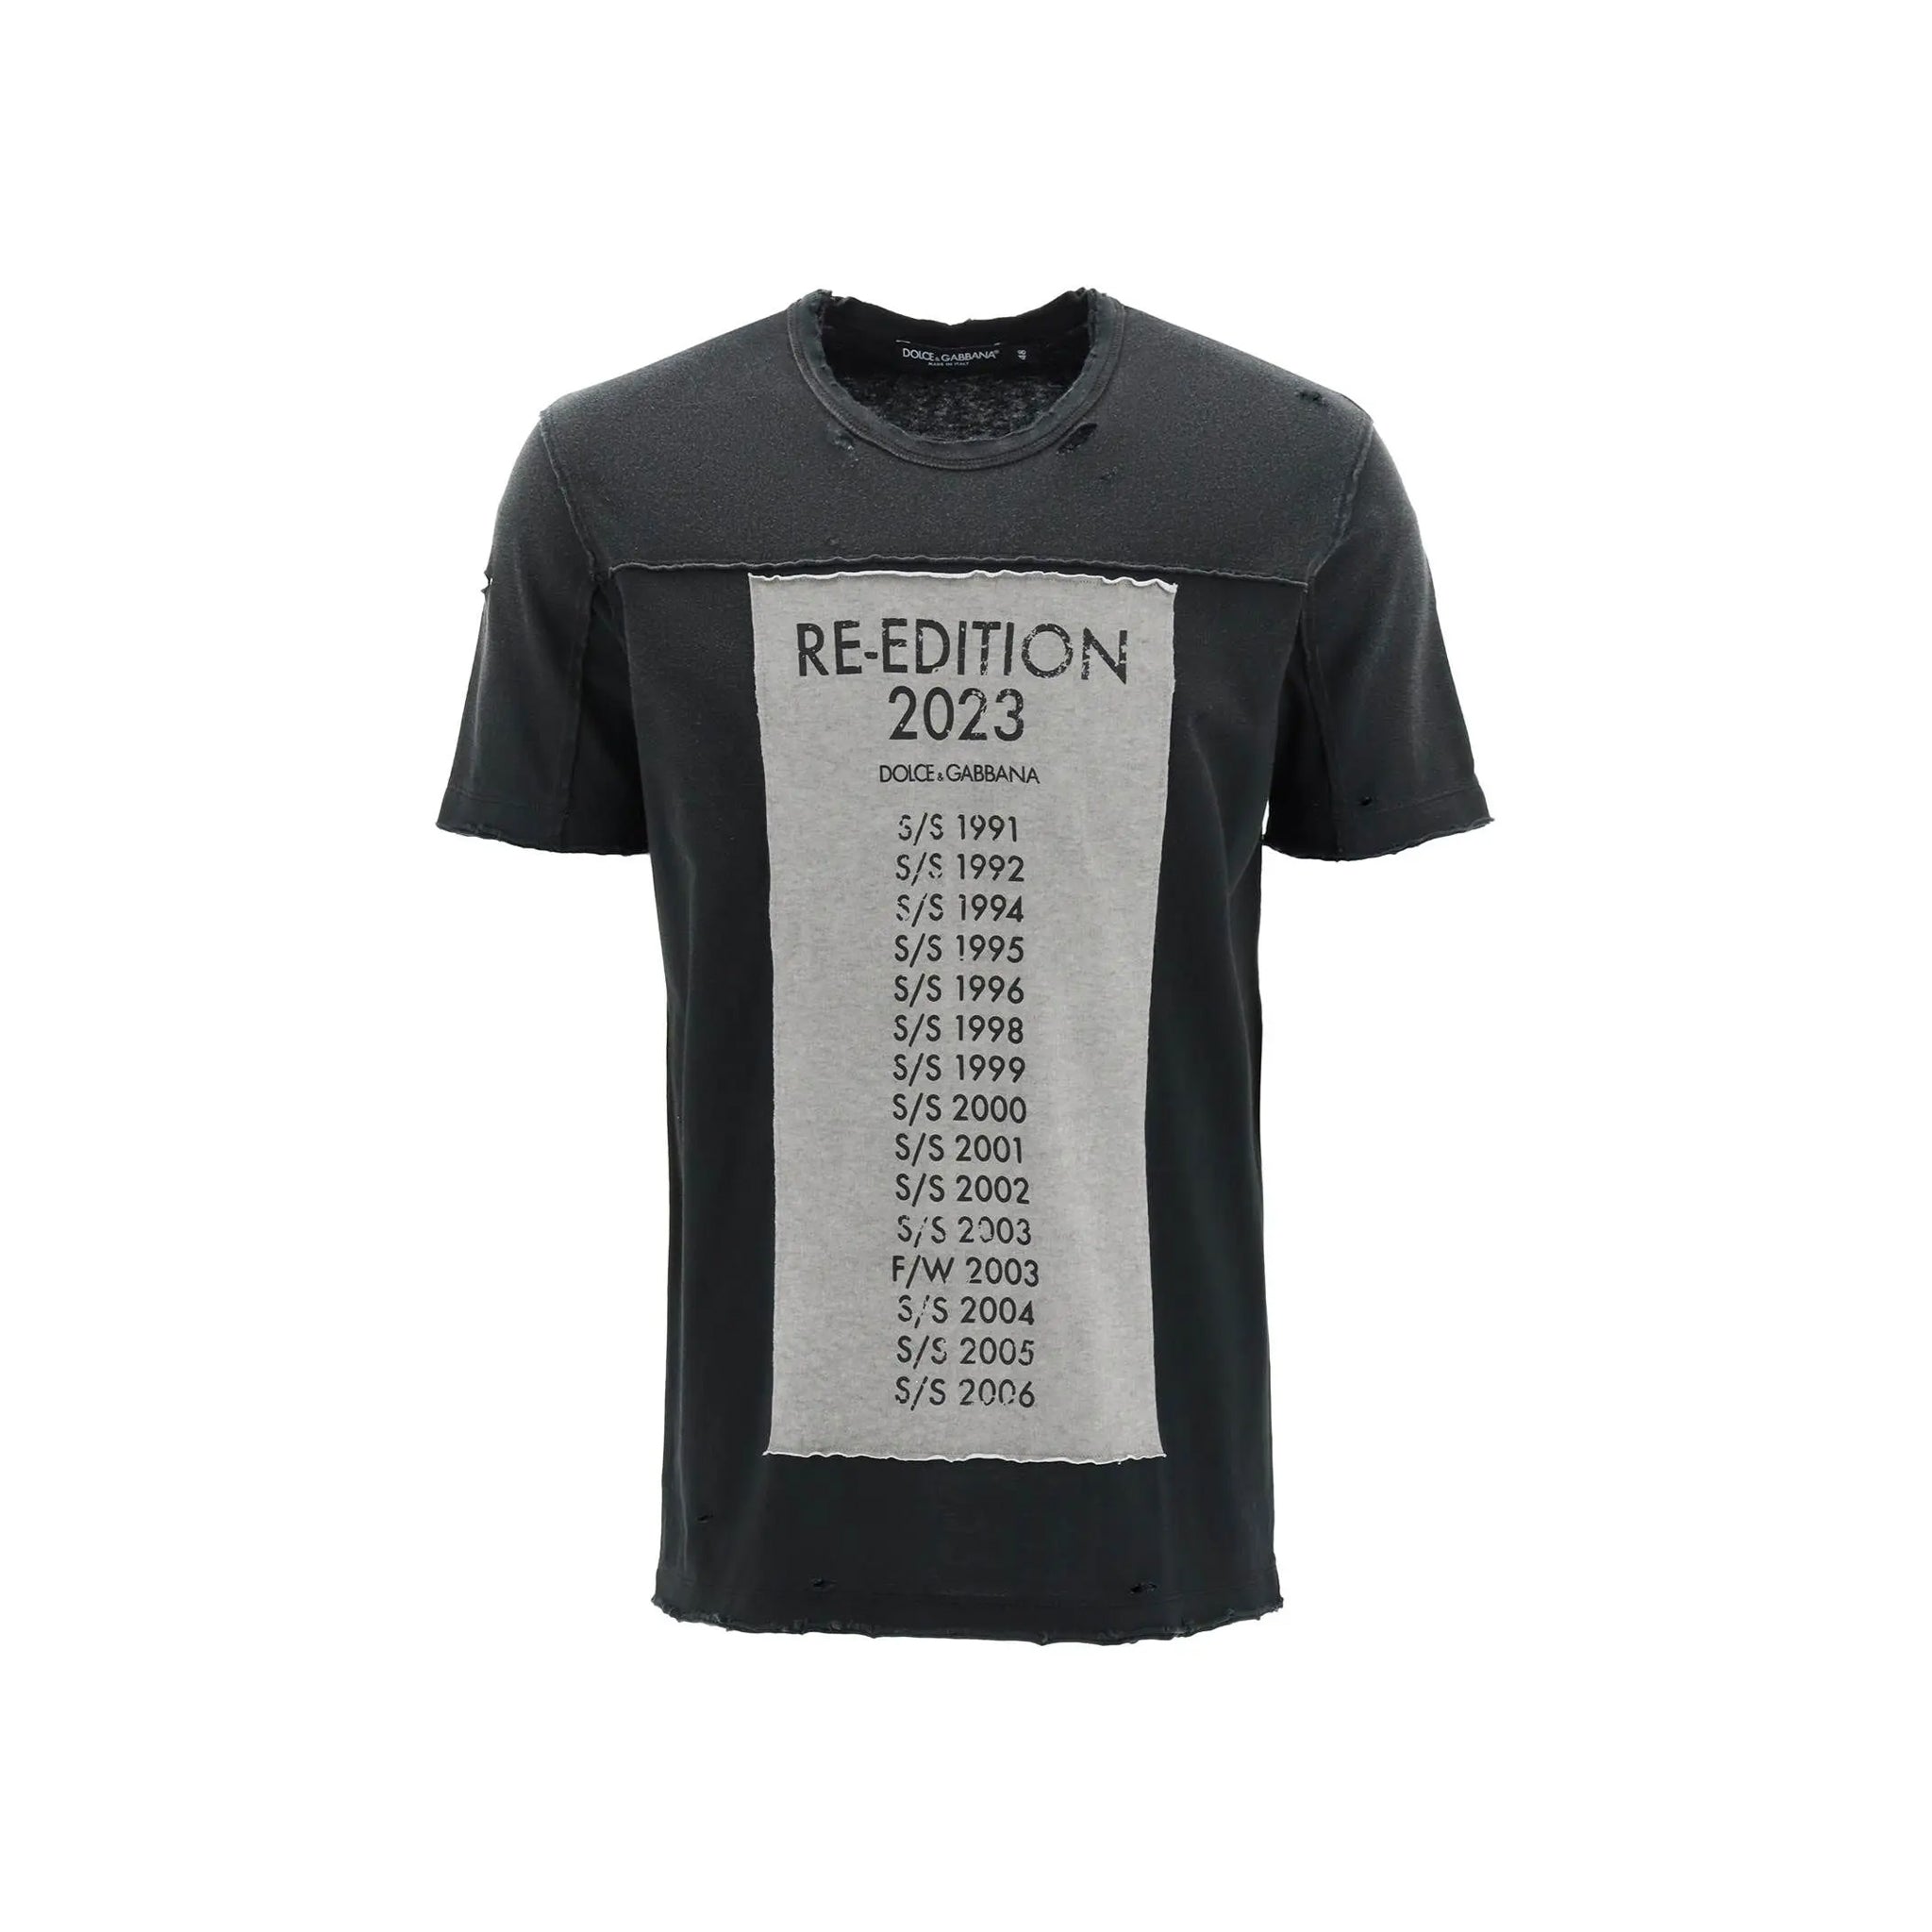 DOLCE___GABBANA_Dolce___Gabbana_Printed_Cotton_T-Shirt_G8QL2T_G7I3N_S9000_Black_1.jpg